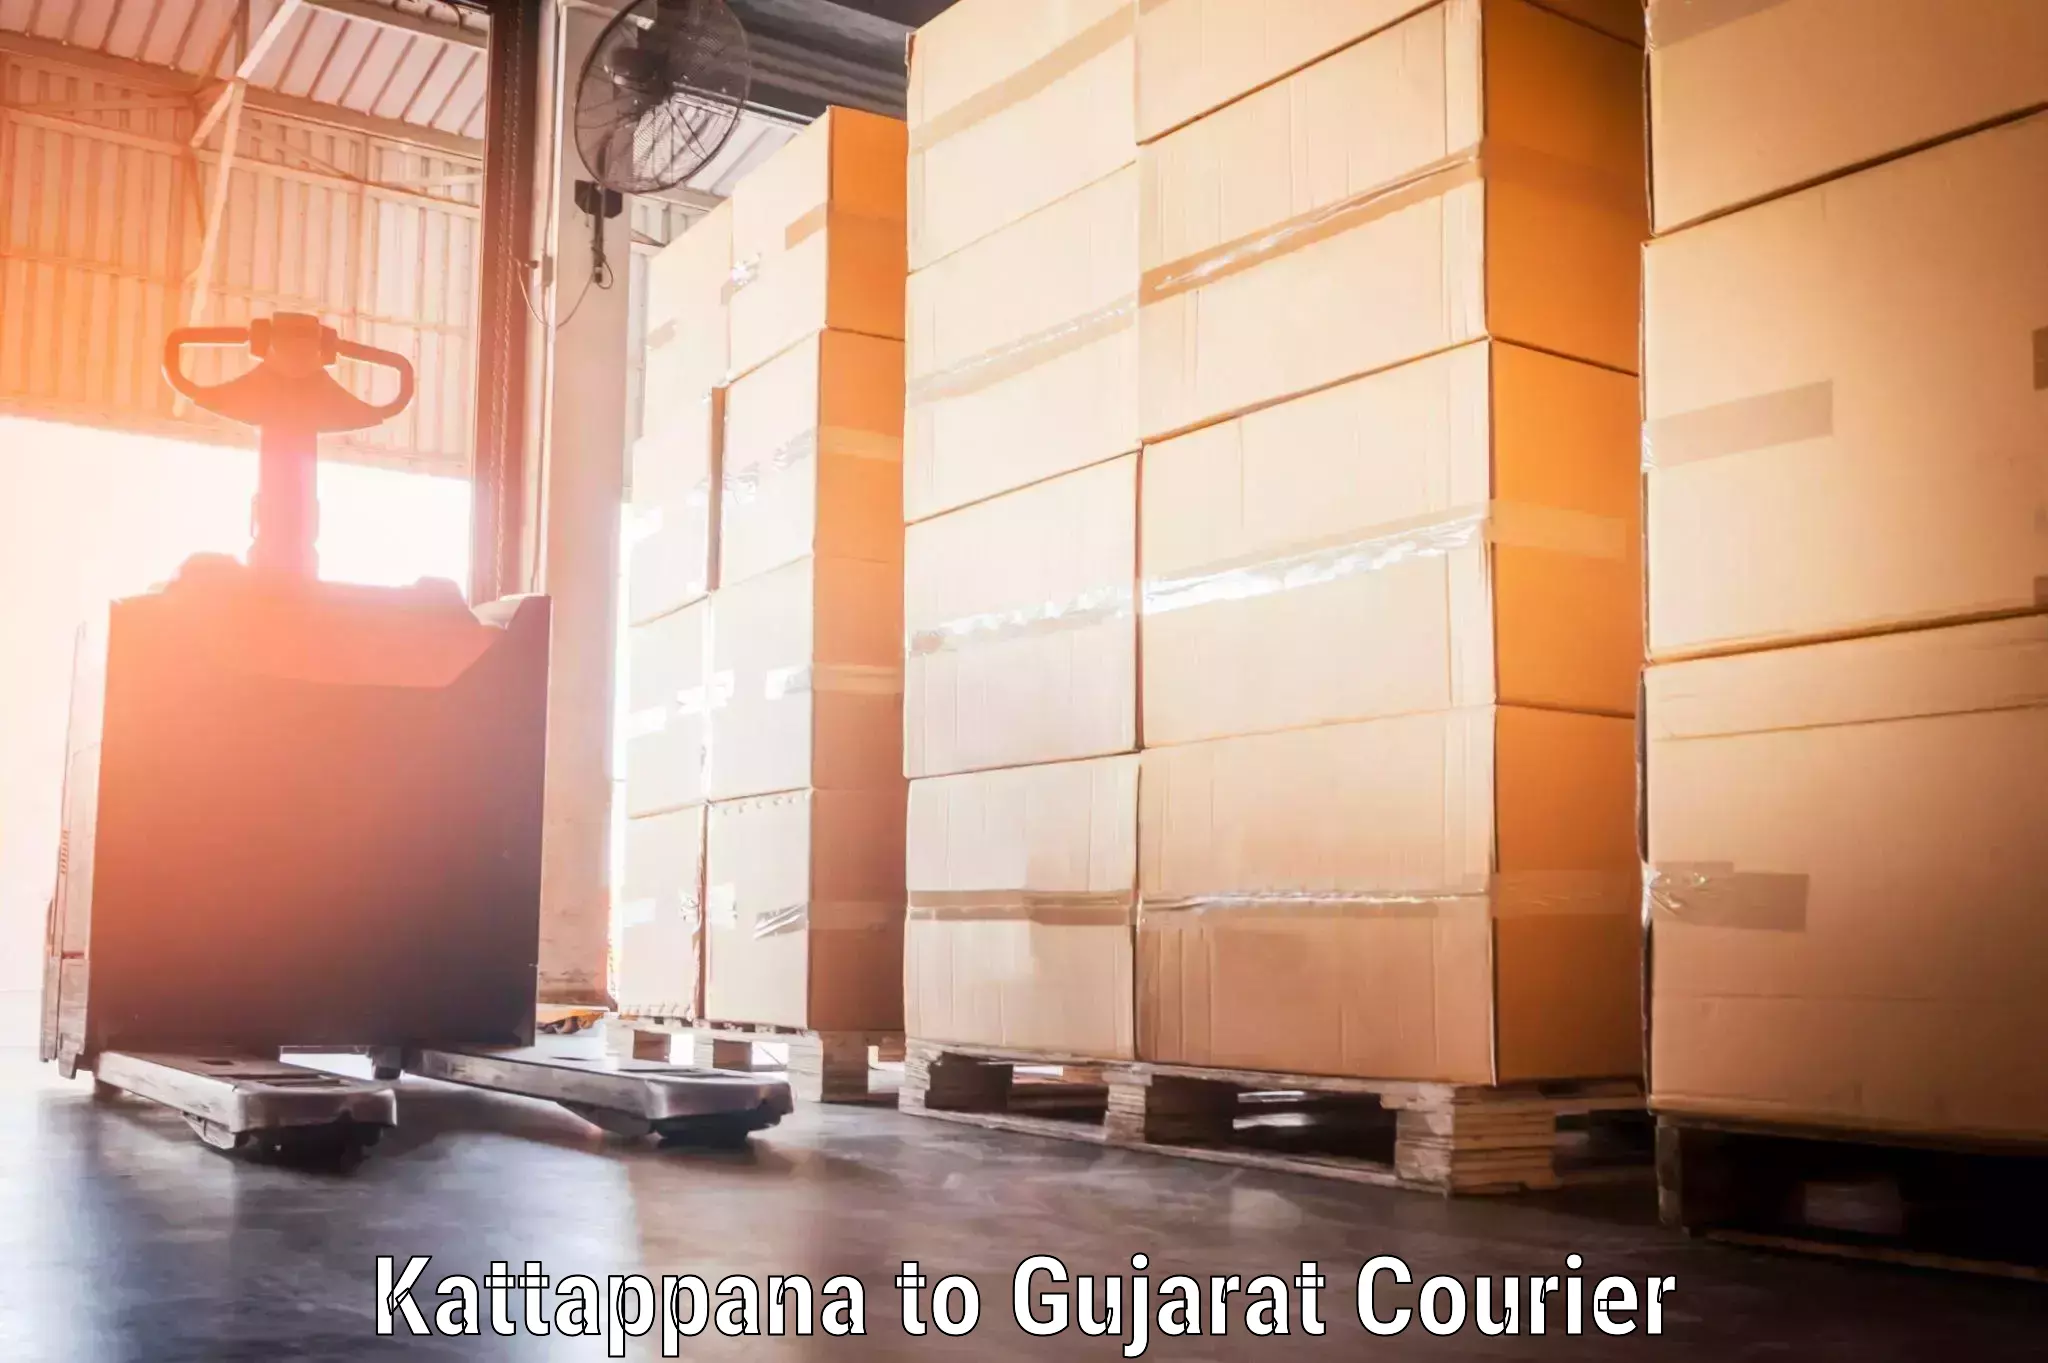 Luggage shipment specialists Kattappana to Gujarat